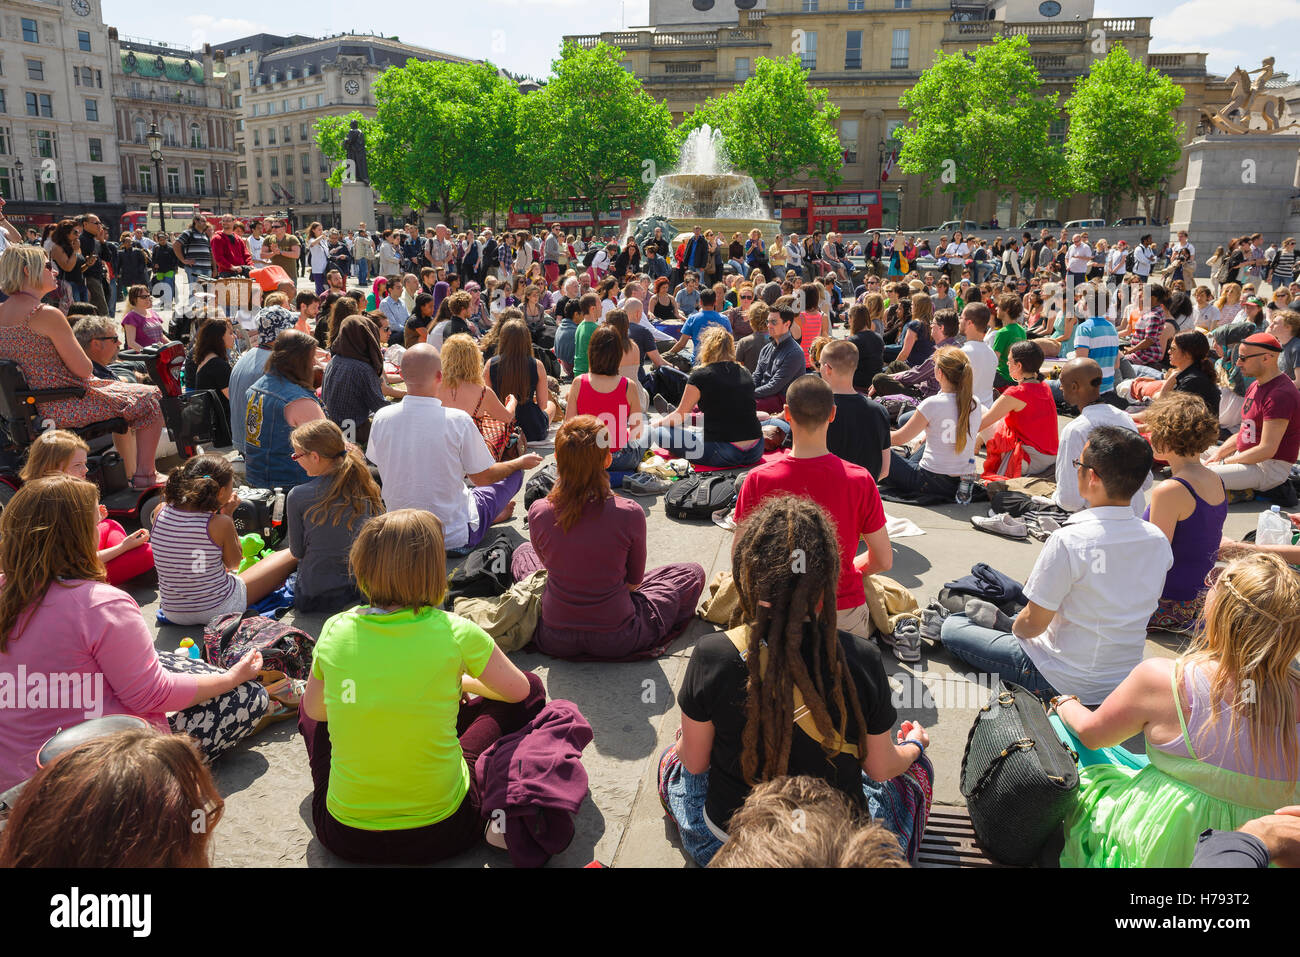 Ciudad de meditación, vista trasera de los participantes en una misa de la meditación grupal en Trafalgar Square, Londres, Reino Unido. Foto de stock